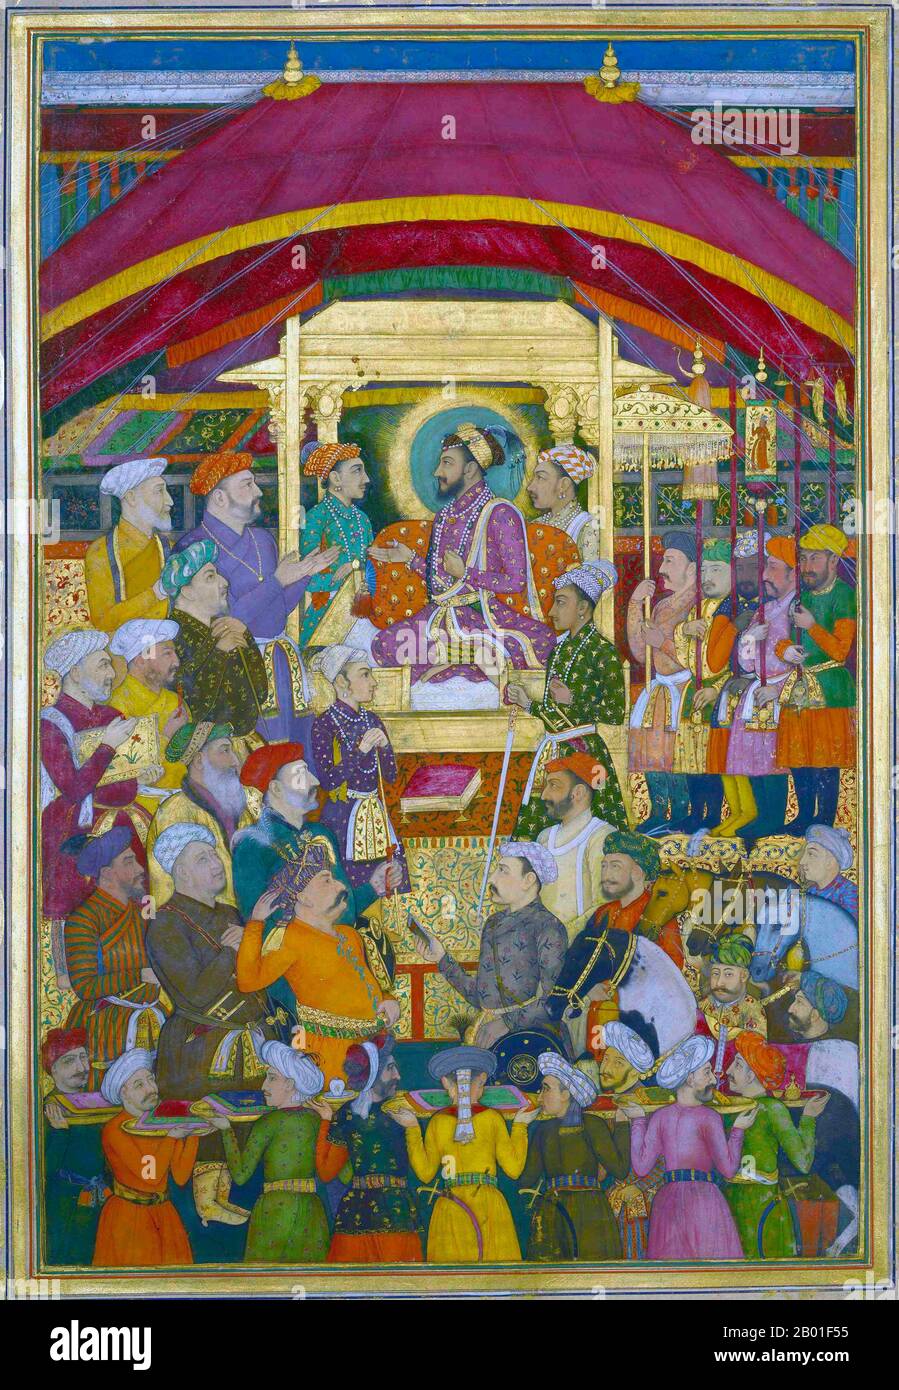 Indien: Shah Jahan (5. Januar 1592 - 22. Januar 1666) empfängt den persischen Botschafter MuhammadAli Beg während der Neujahrsfeier. Aquarellmalerei von Jalal Quli (17. Jahrhundert), c. 1635-1650. Shah Jahan war von 1628 bis 1658 Kaiser des Mogul-Reiches auf dem indischen Subkontinent. Der Name Shah Jahan stammt aus Persisch und bedeutet „König der Welt“. Er war der fünfte Mogul-Kaiser nach Babur, Humayun, Akbar und Jahangir. Die Zeit seiner Herrschaft war das goldene Zeitalter der Mogul-Architektur. Shah Jahan errichtete viele herrliche Denkmäler, von denen das berühmteste das Taj Mahal ist. Stockfoto